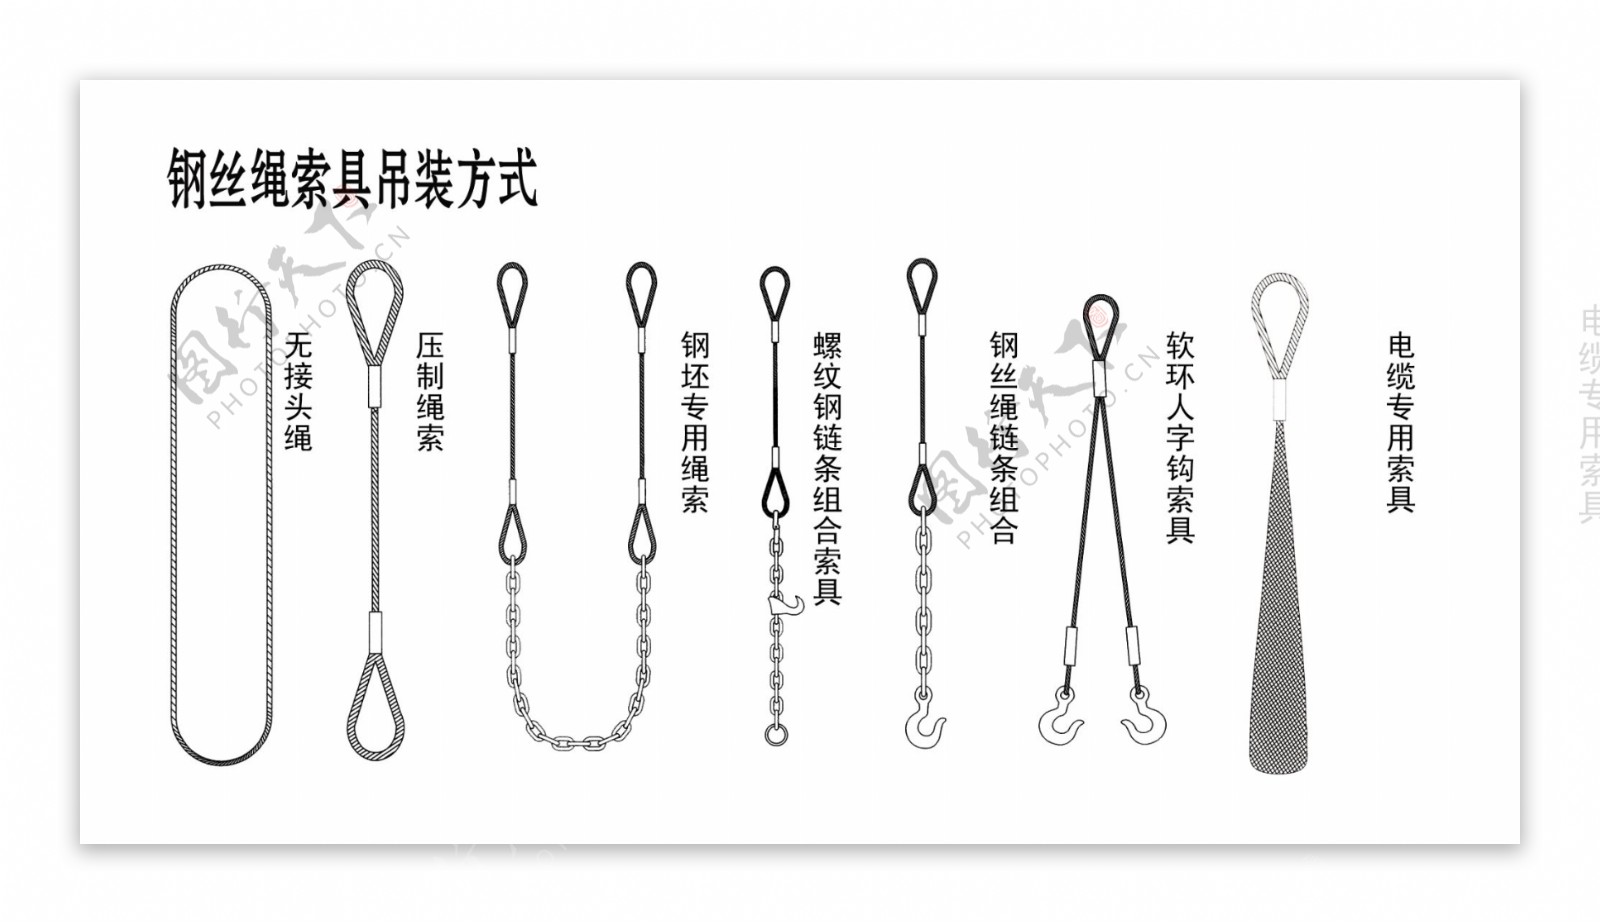 钢丝绳索具吊装方式2